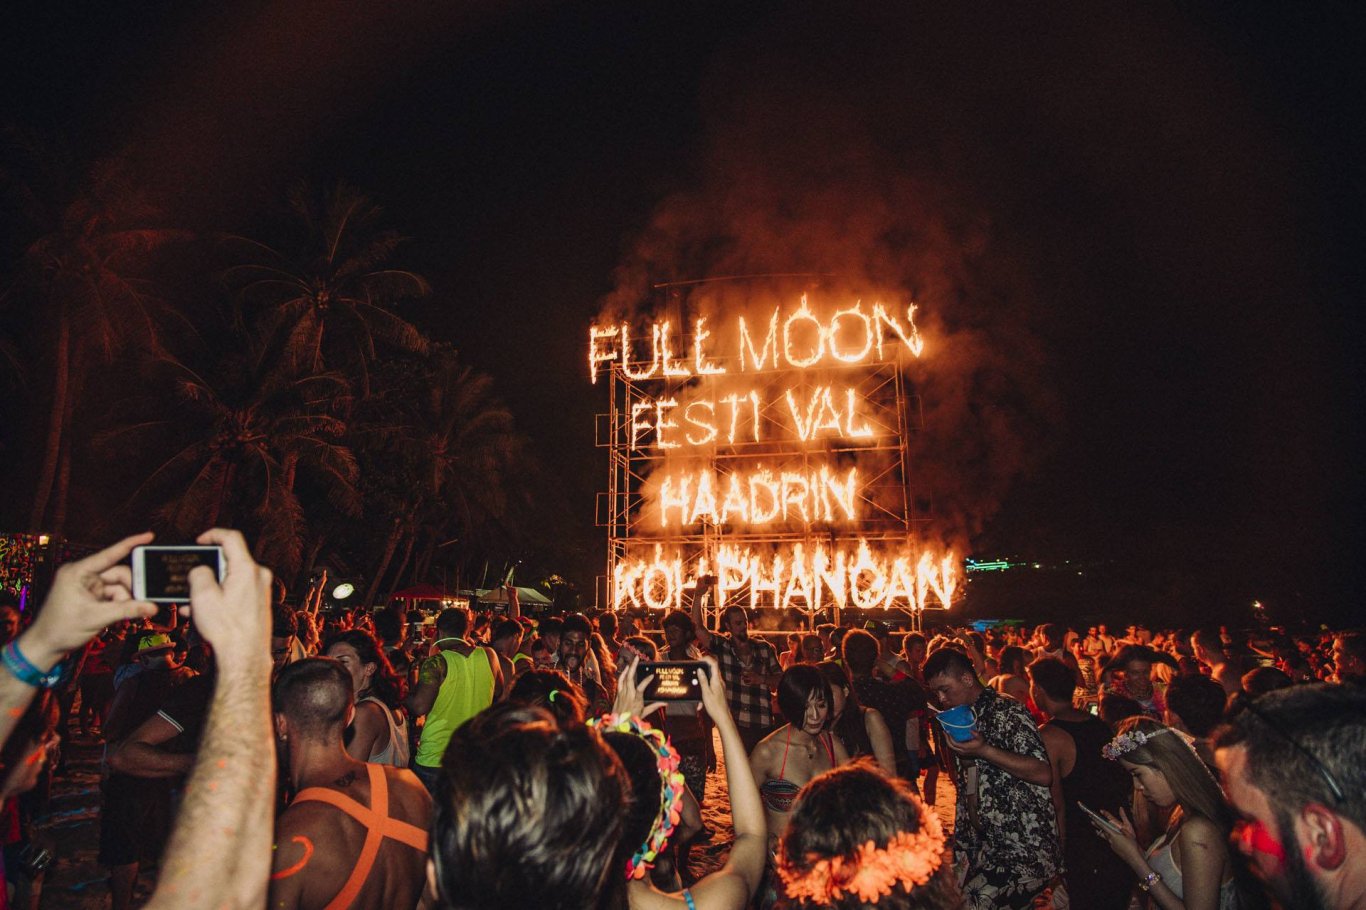 Full moon party in Thailand on Haadrin beach